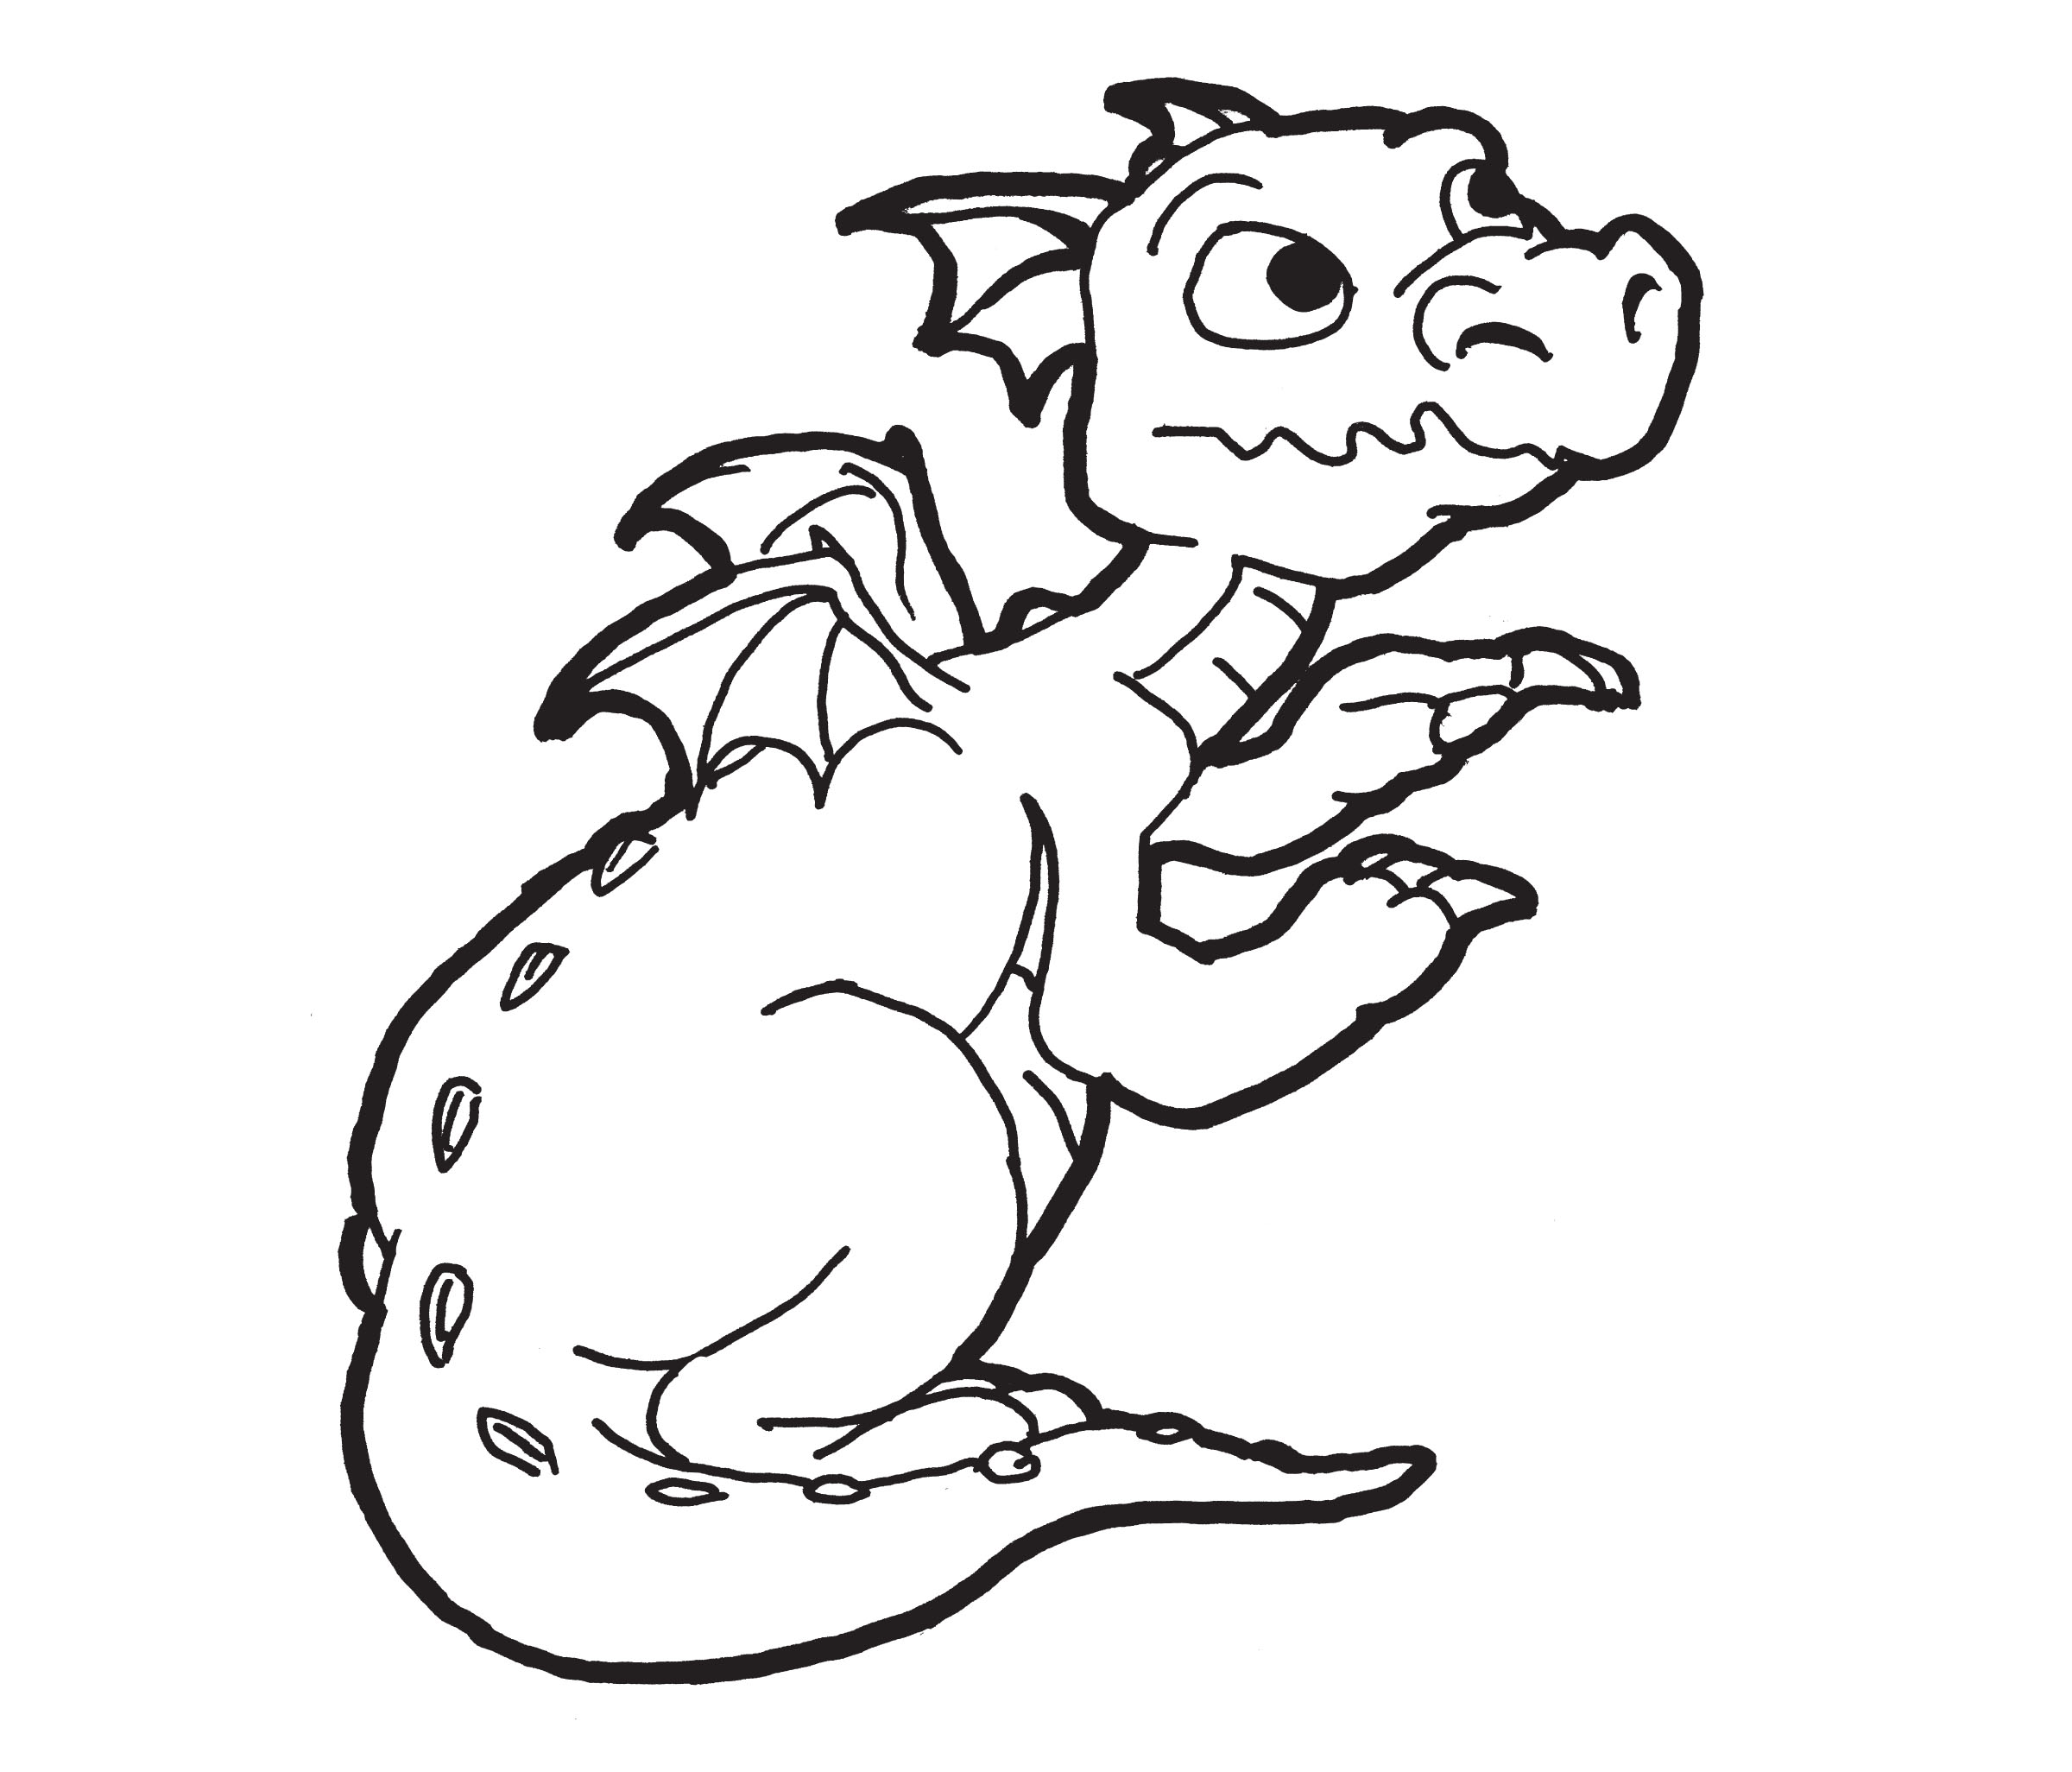 Free Printable Dragons For Kids